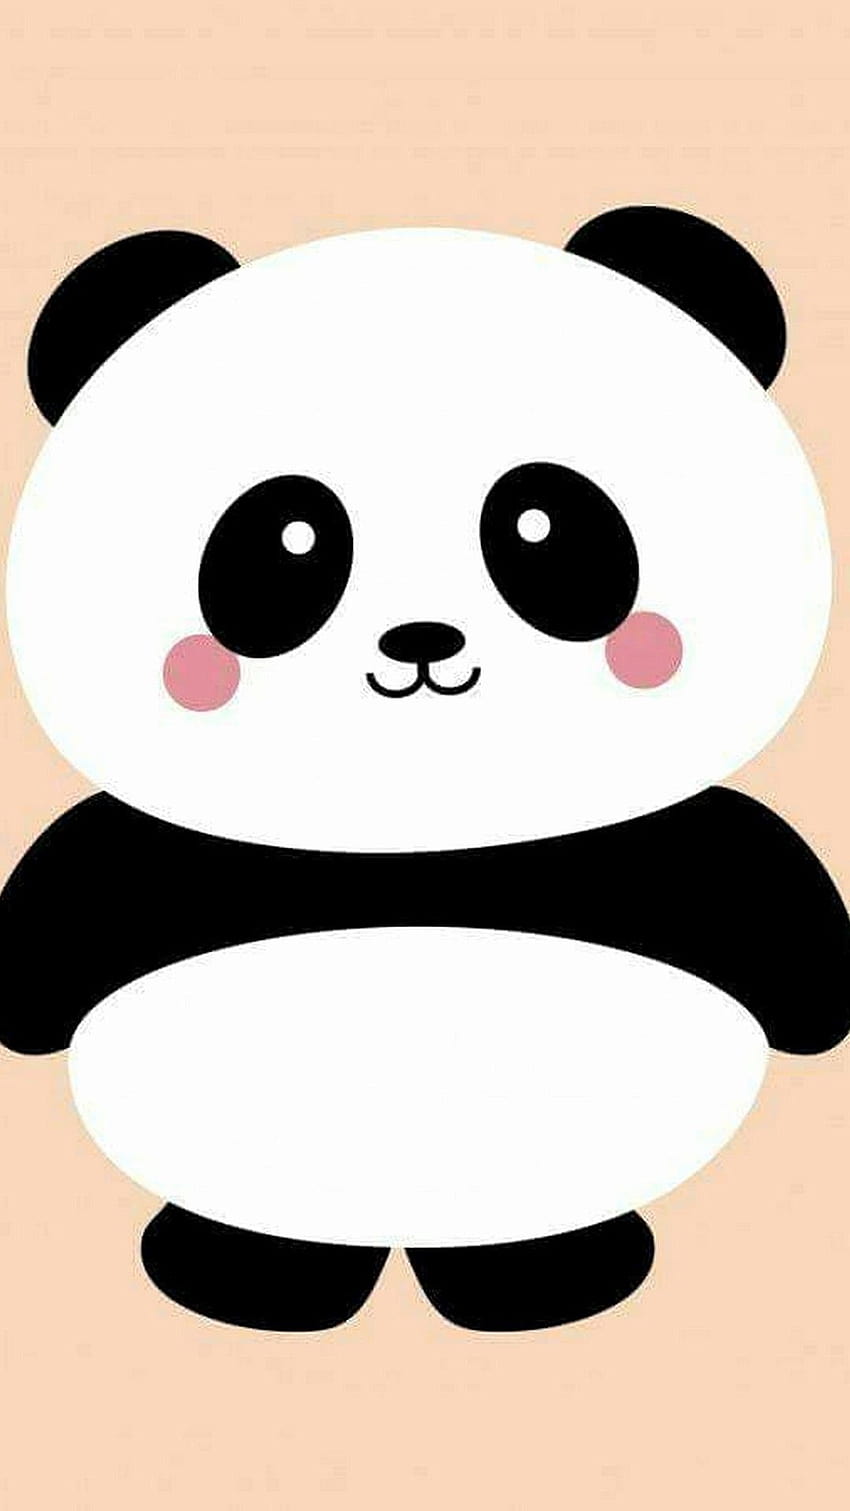 Cute Panda iPhone on Dog, panda face HD phone wallpaper